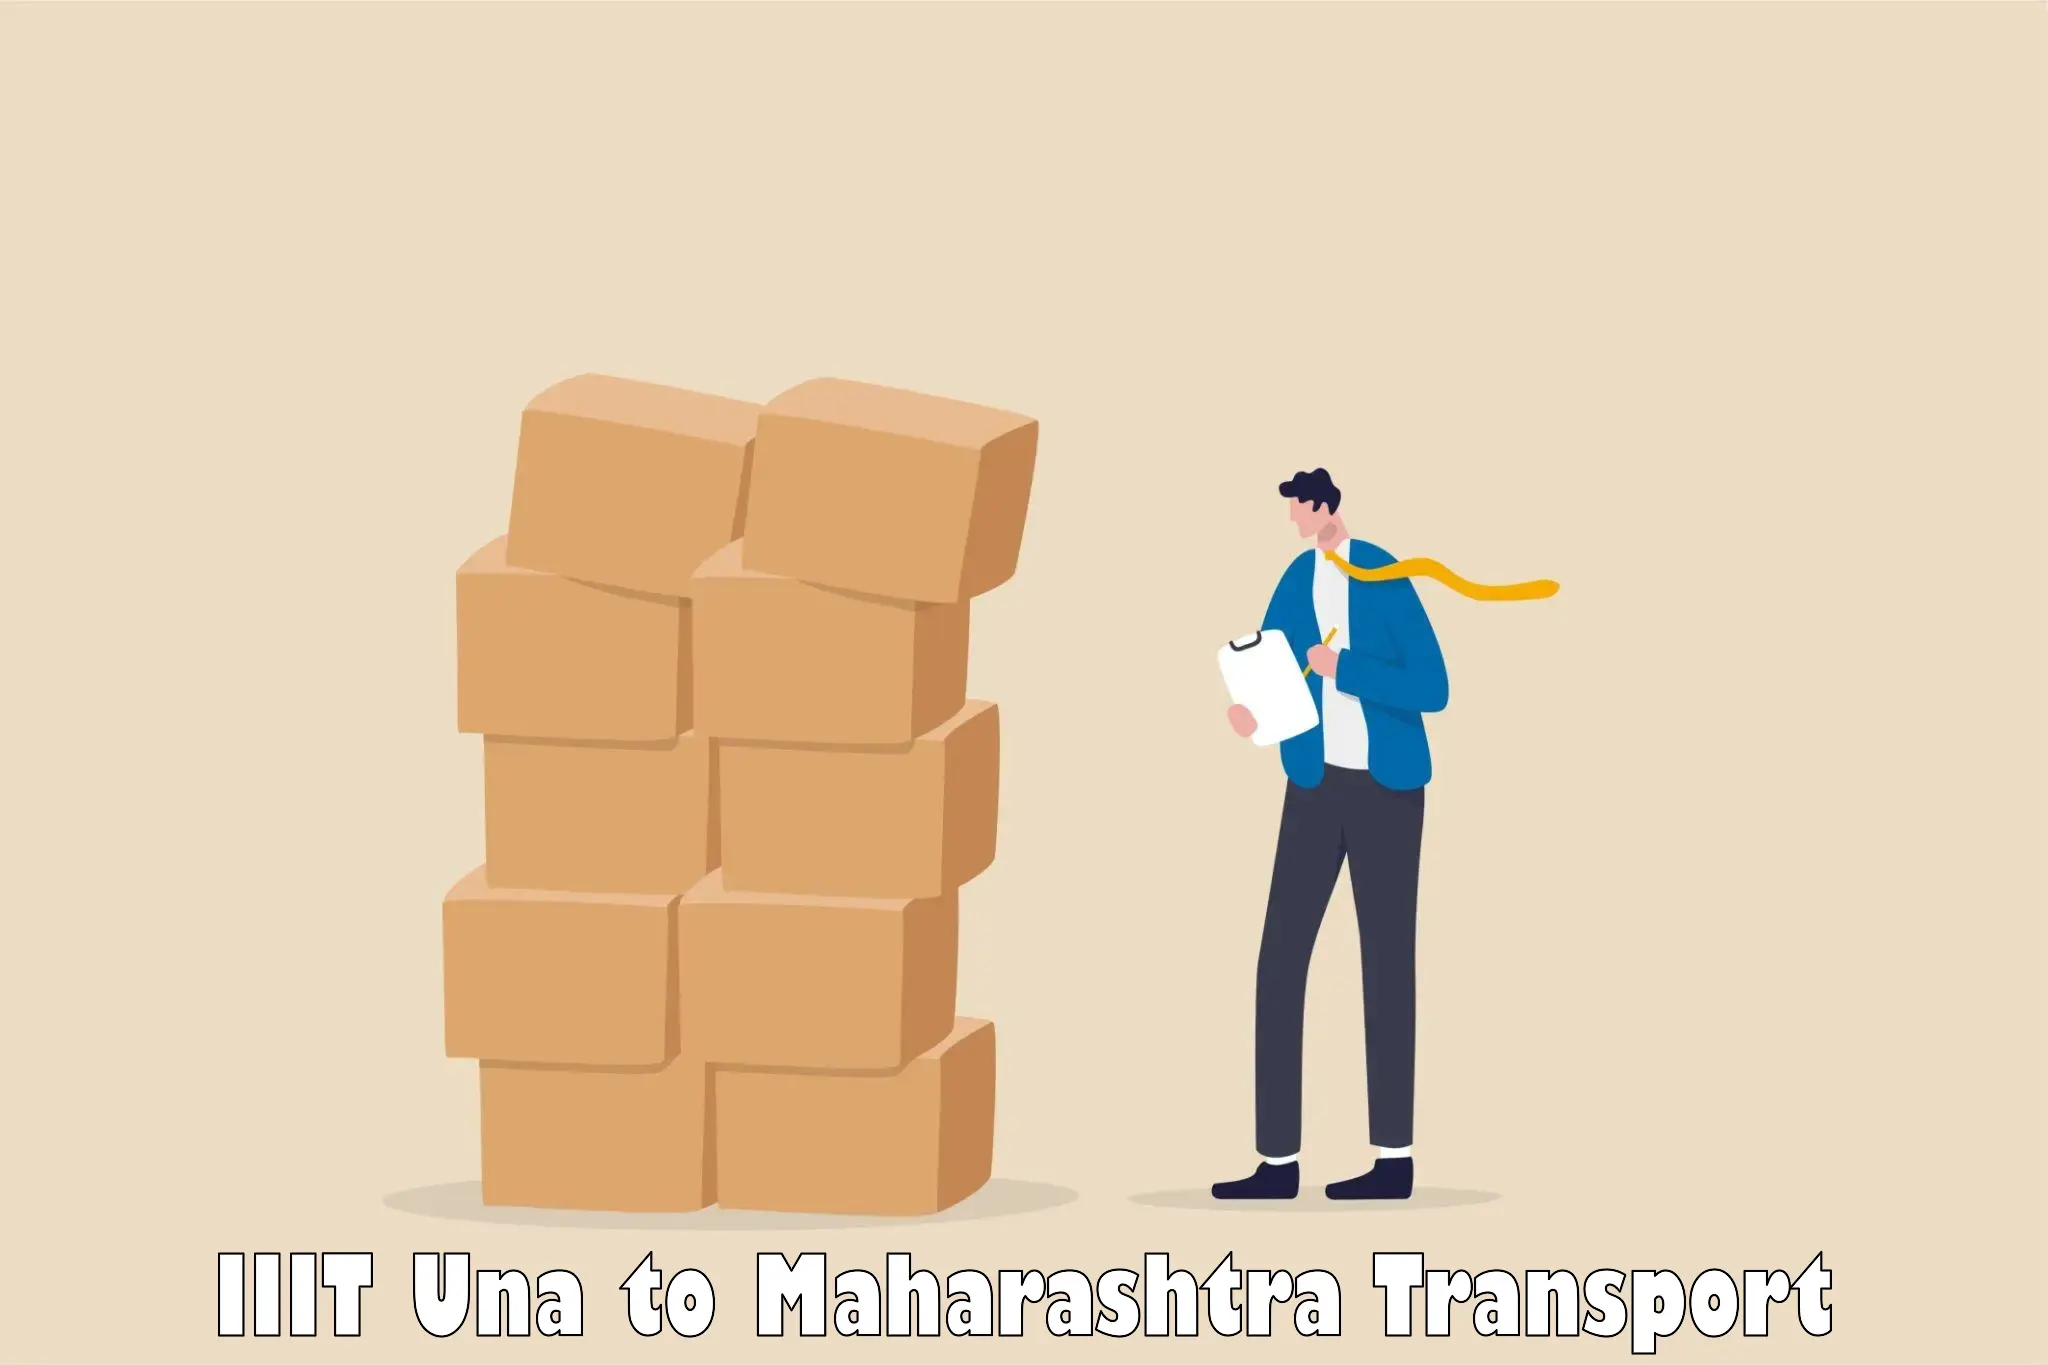 Transport services in IIIT Una to Walchandnagar